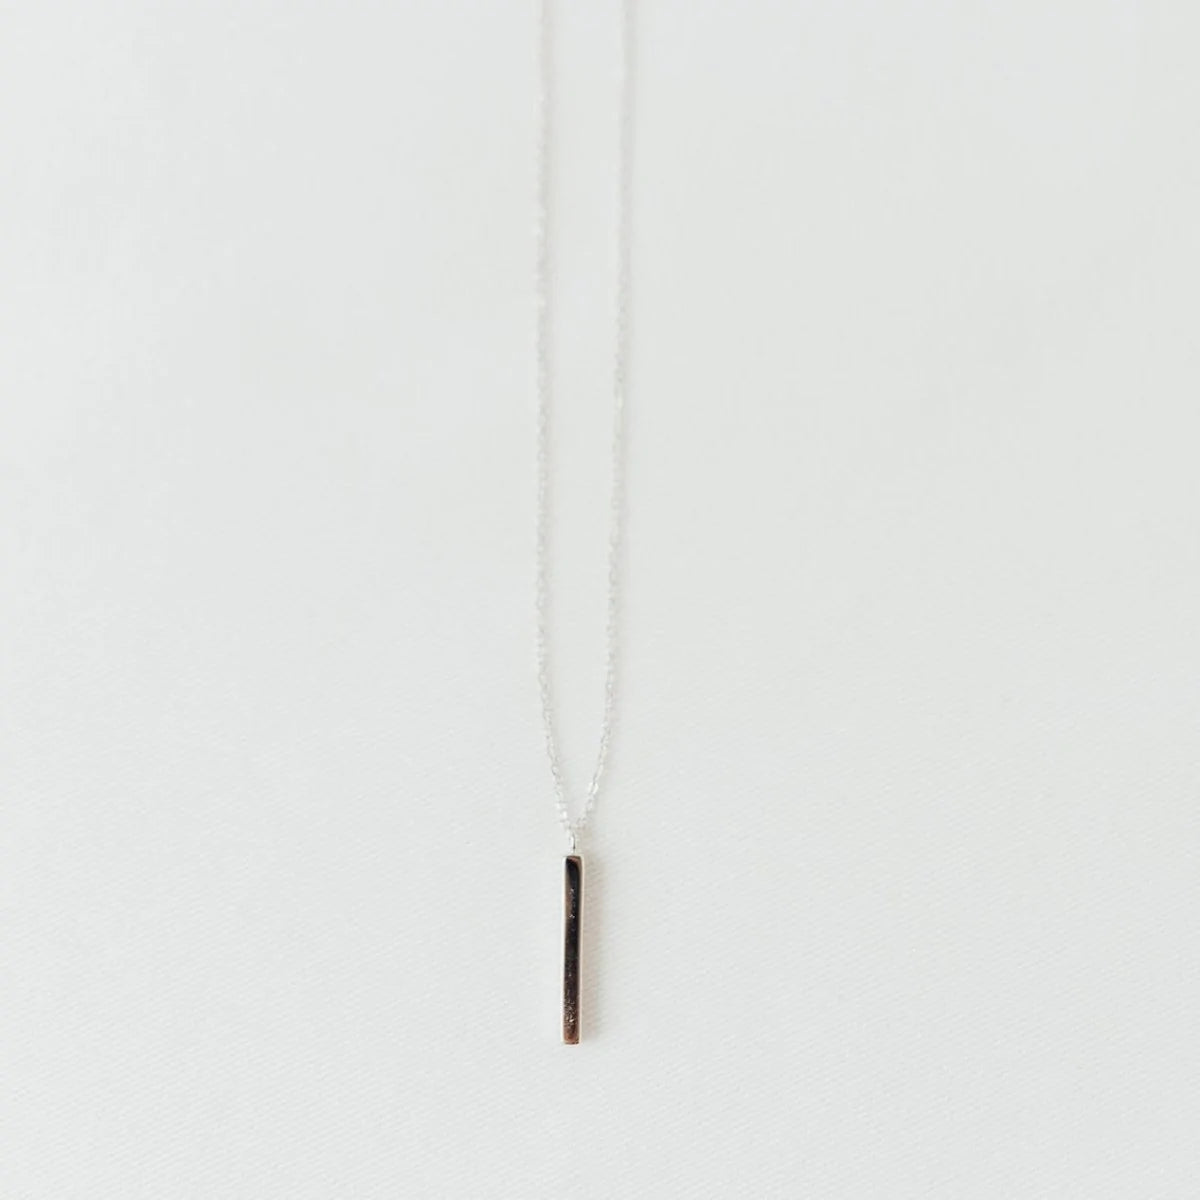 Kette "Bar Necklace" (925er Silber)